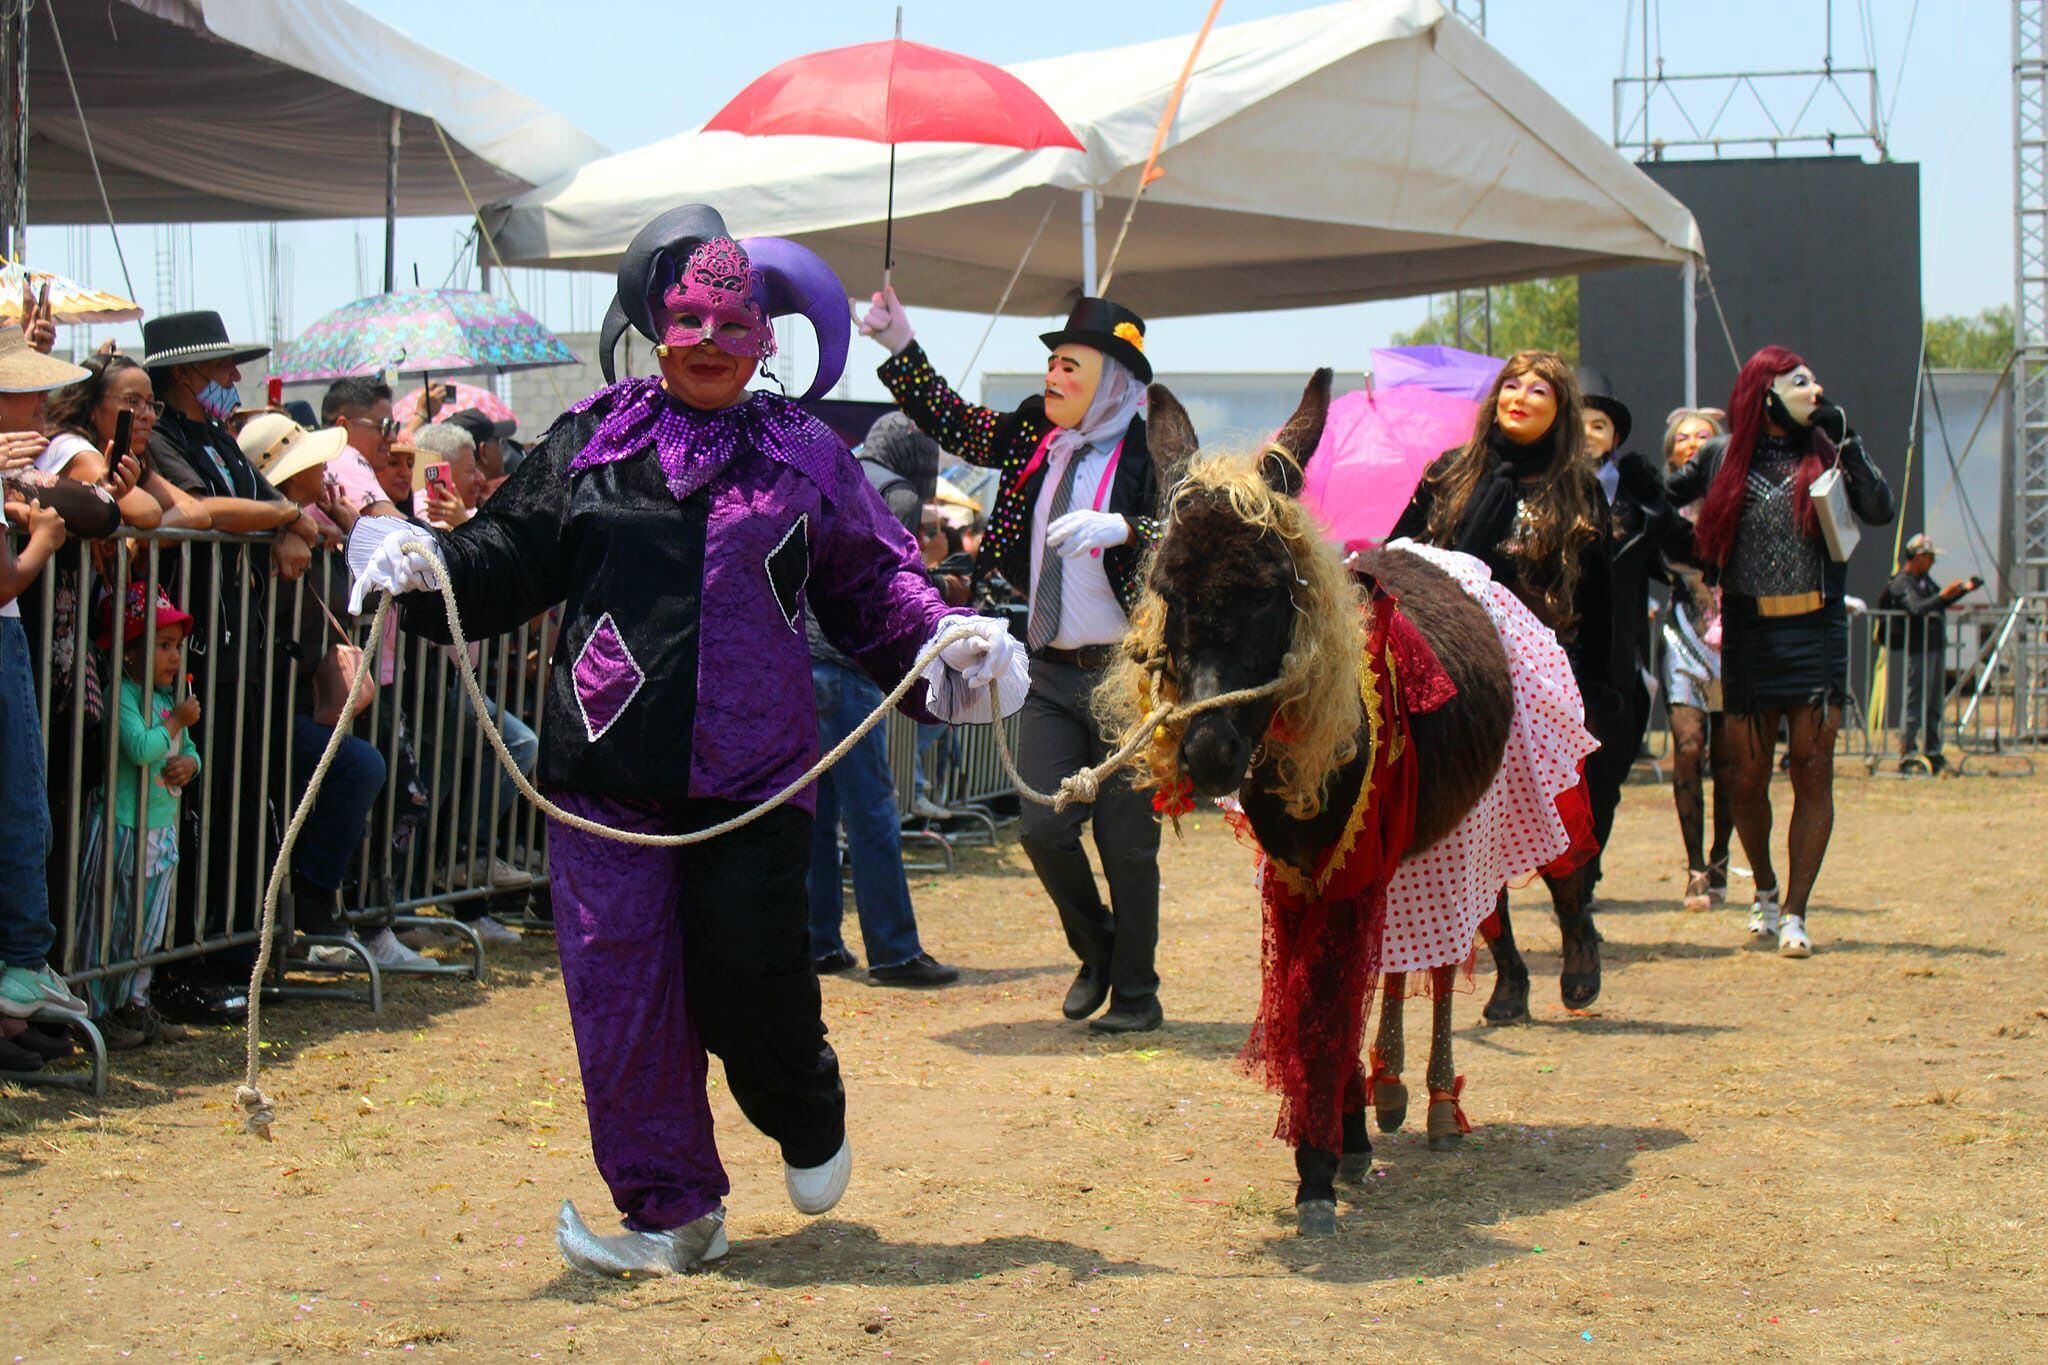 Un par de arlequines fueron protagonistas del show. (Facebook/Feria Nacional del Burro Otumba 2024).

Burros, equinos, feria nacional del burro 2024, Otumba, México, disfraces, polo, animales, mascotas